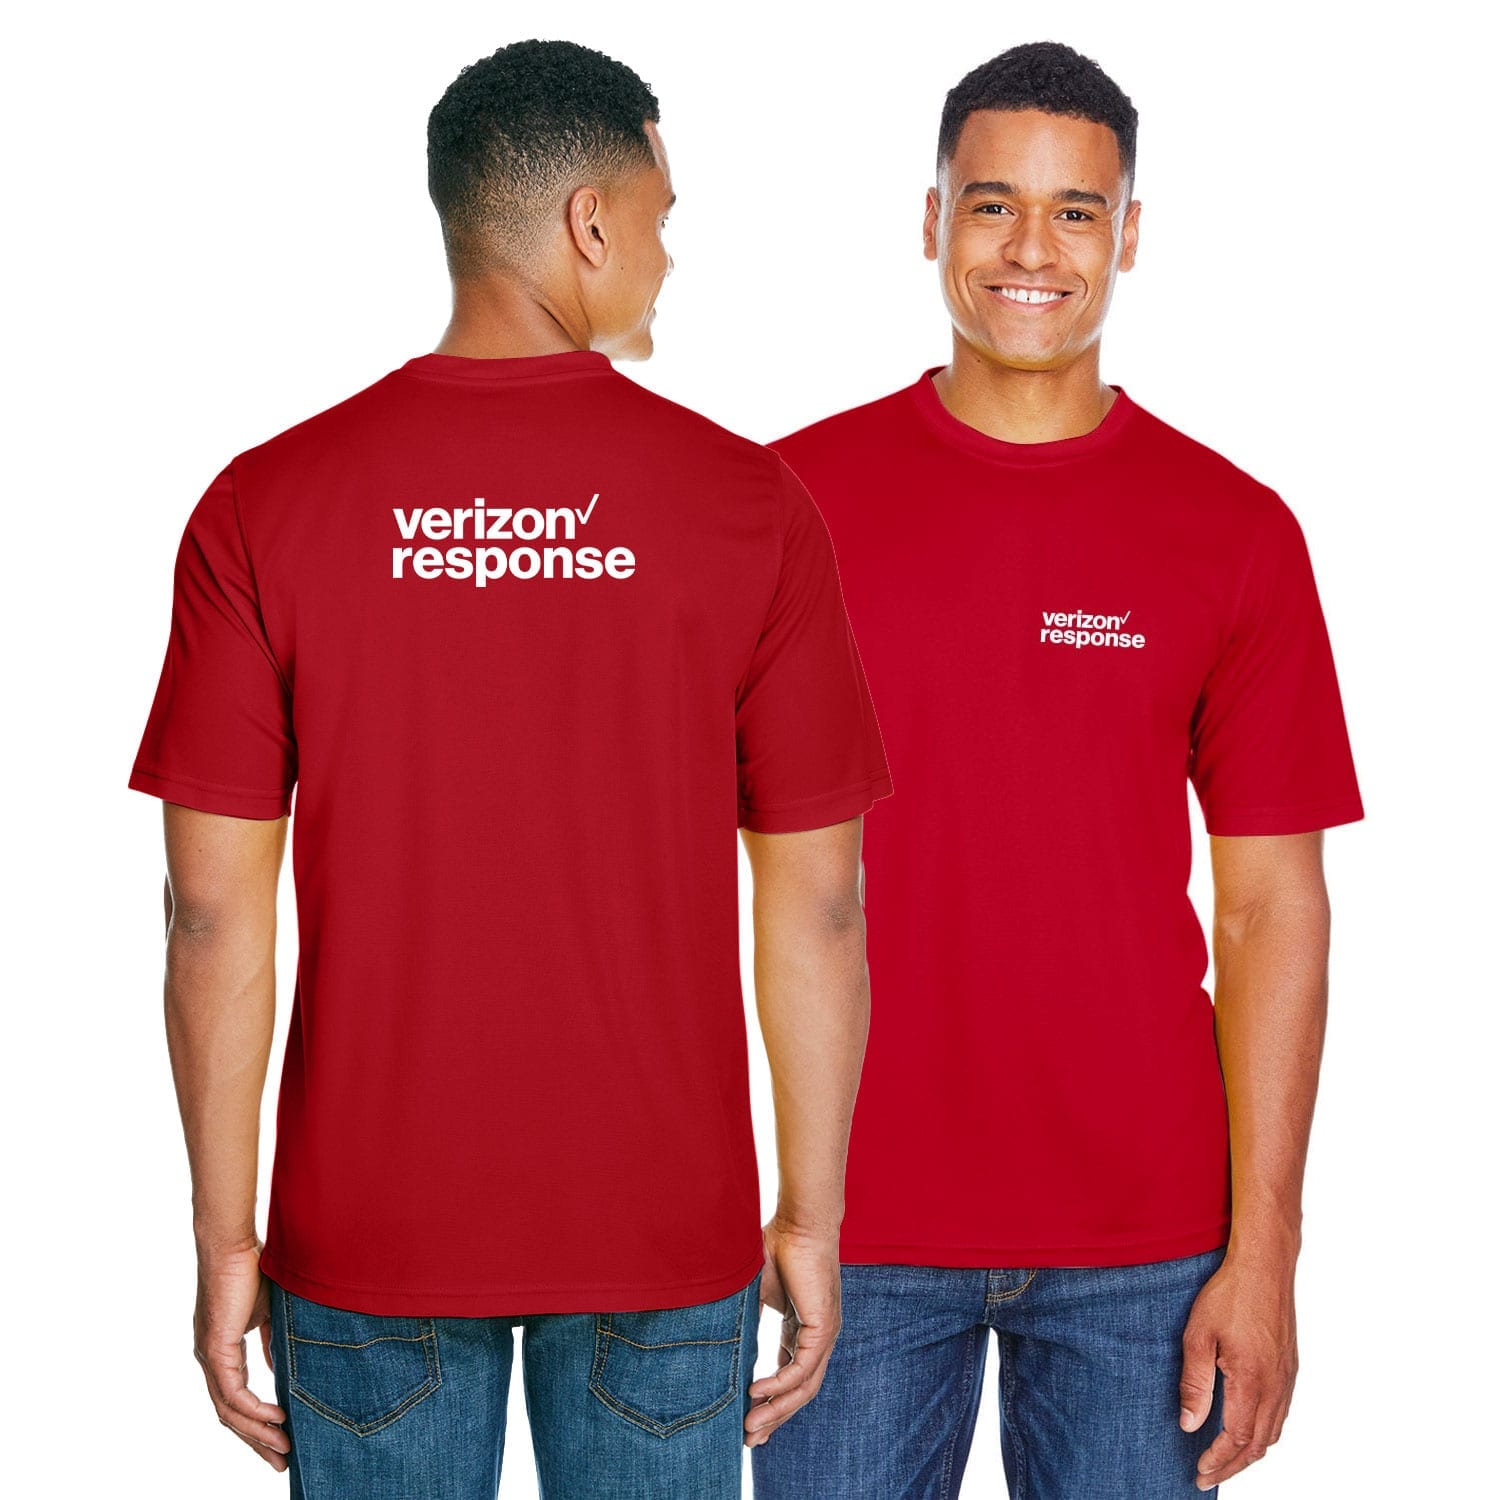 Verizon Response Men's Performance T-Shirt